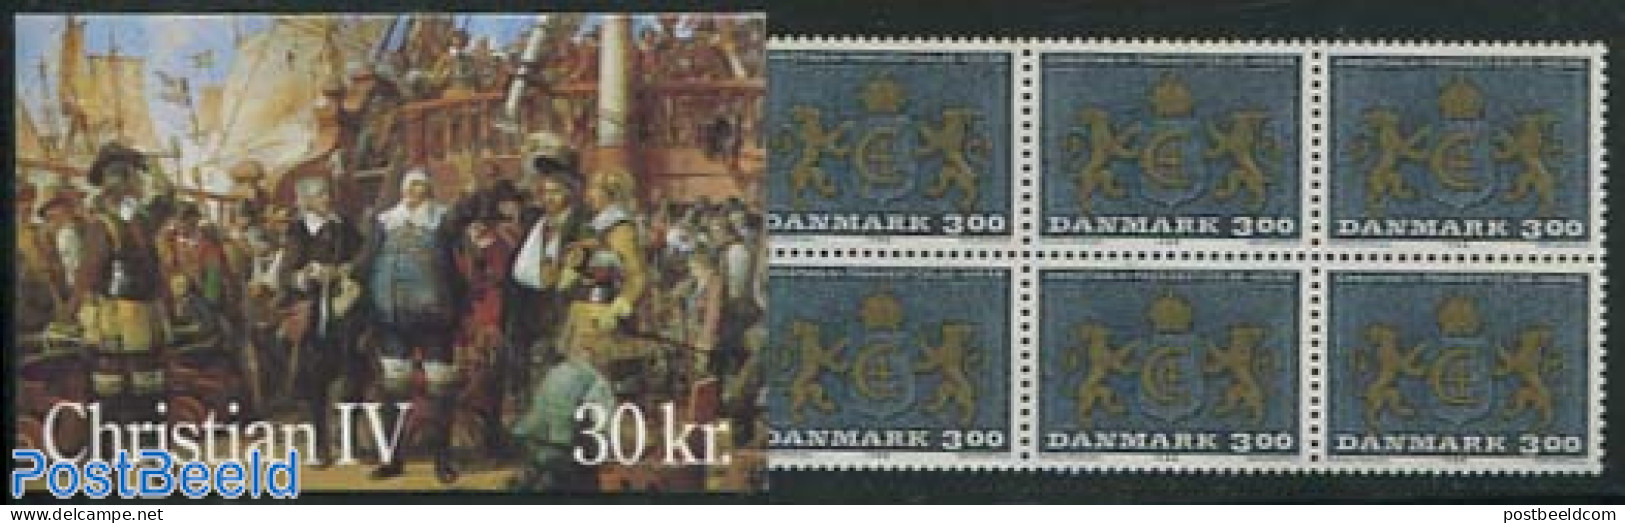 Denmark 1988 King Christian IV Booklet, Mint NH - Ongebruikt